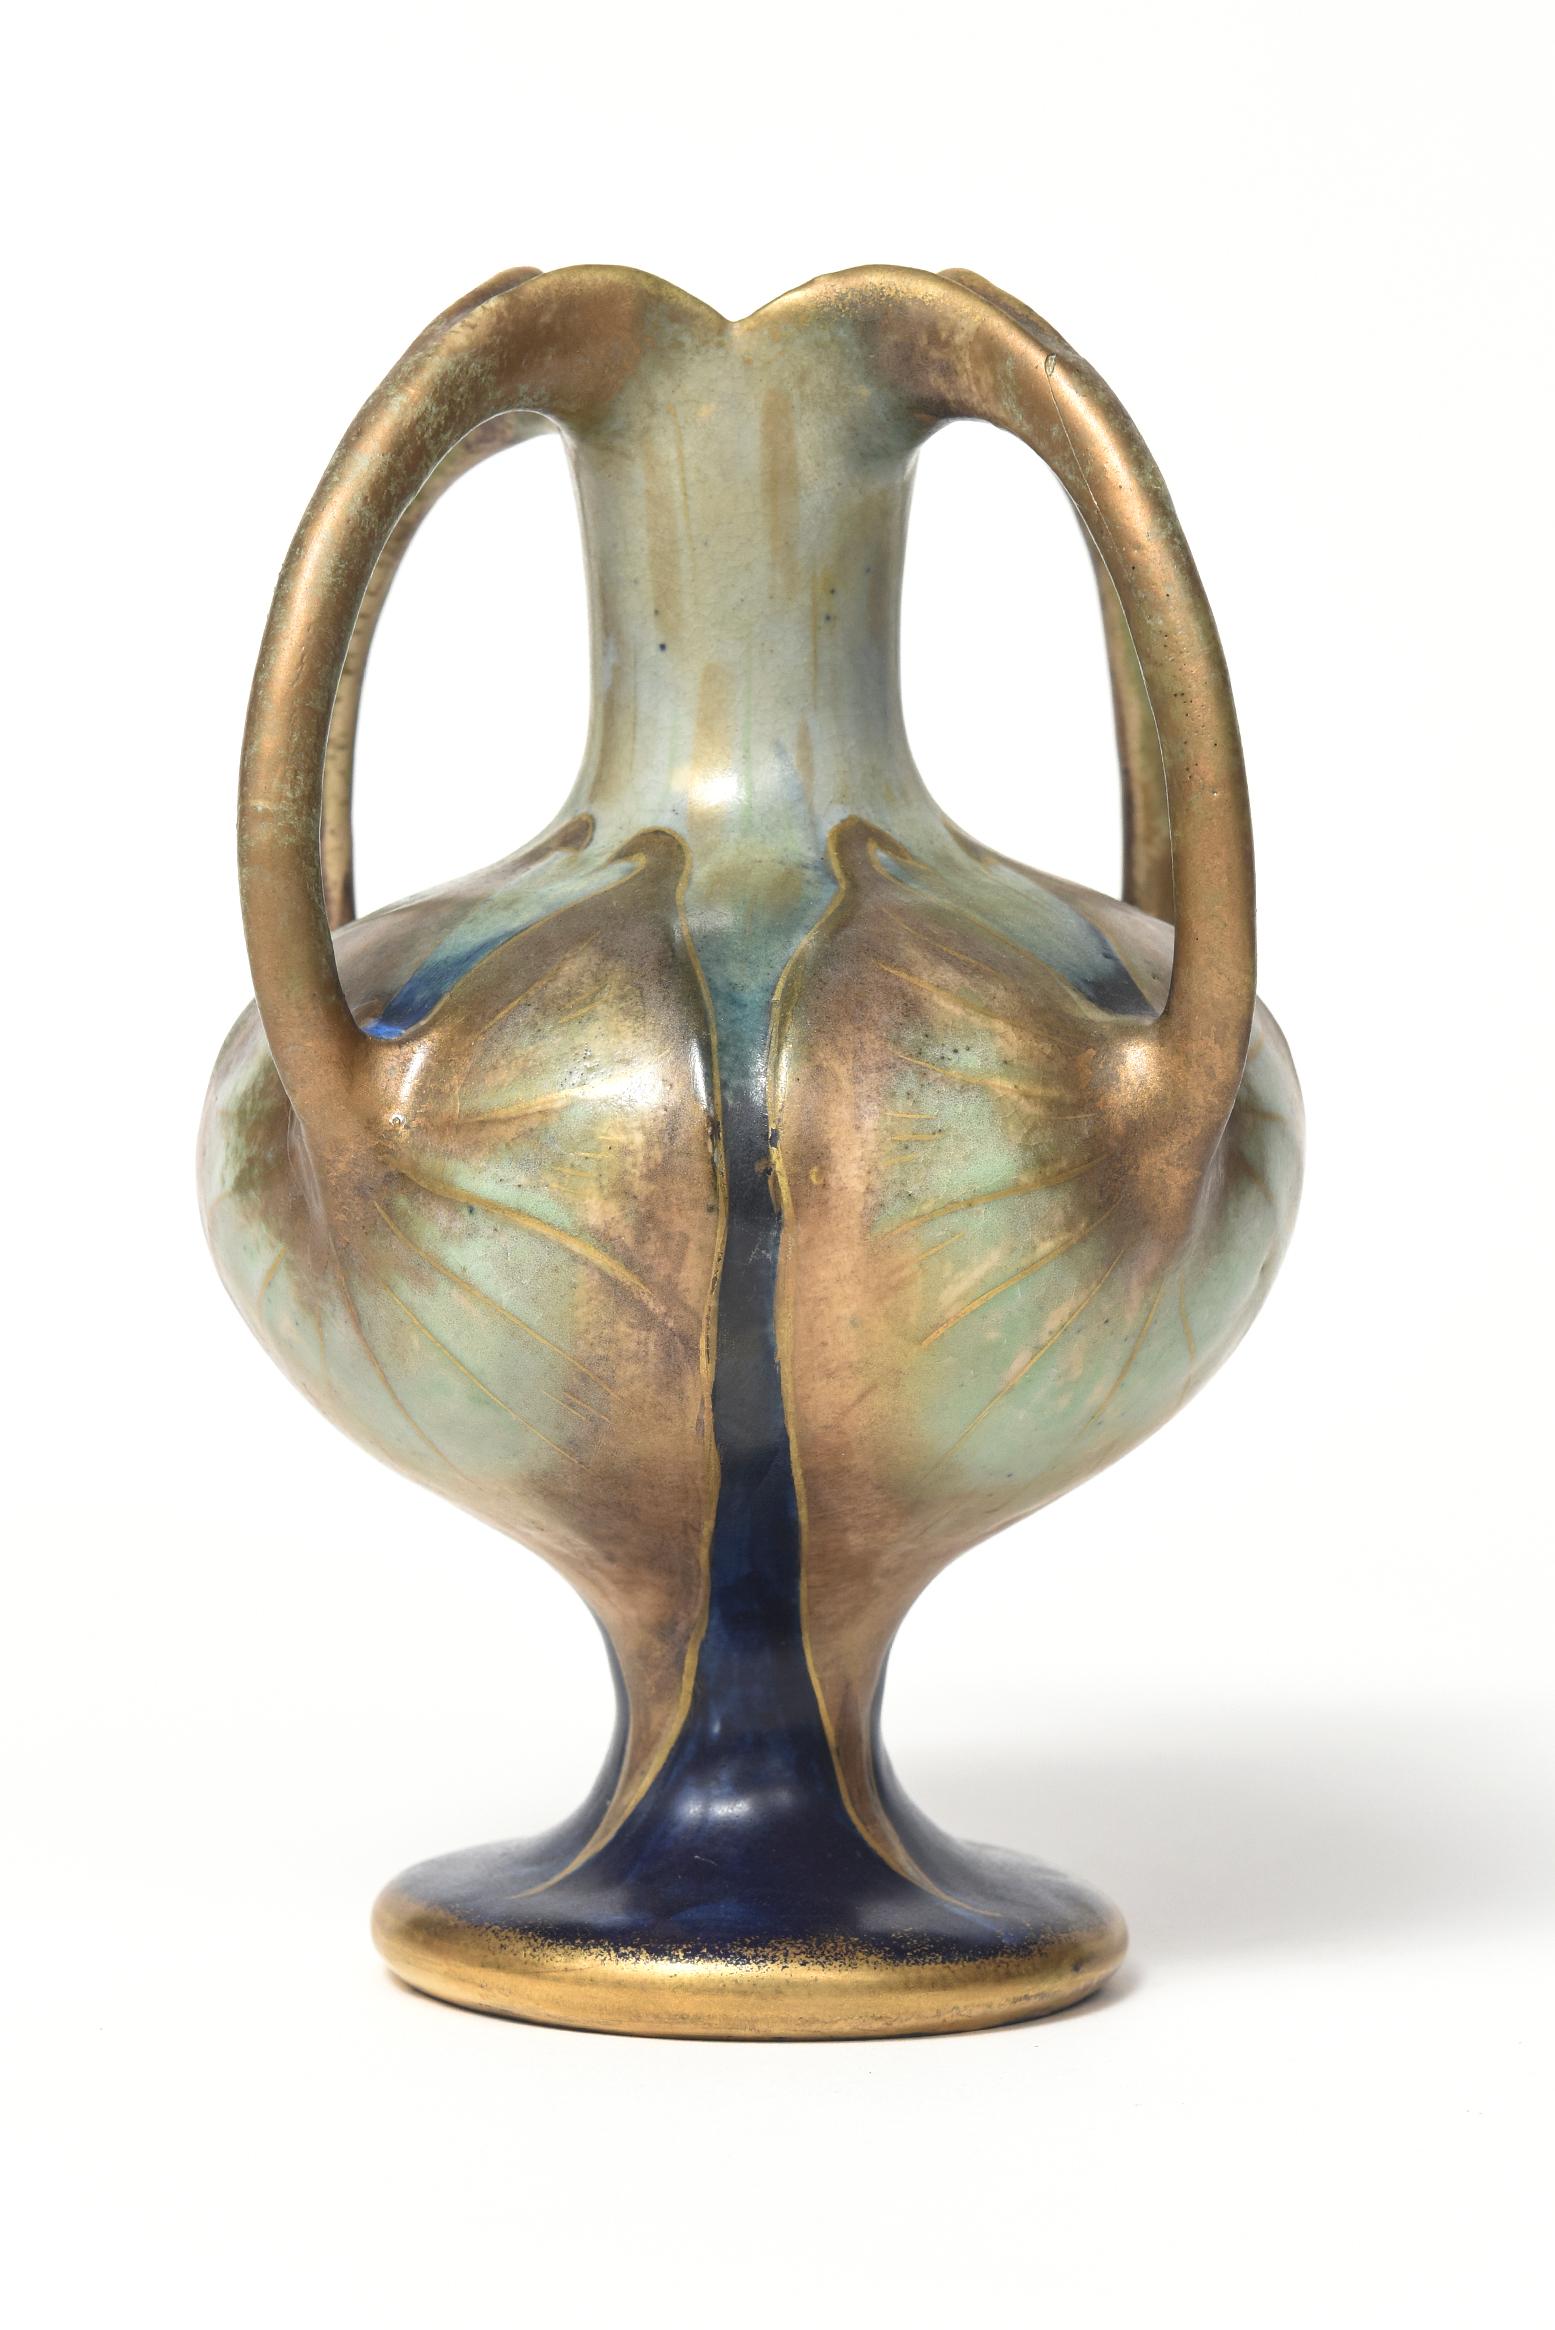 Paul Dachsel Amphora Art Nouveau Vier Griff Lily Gold Blau Grün Keramik Vase (Art nouveau)